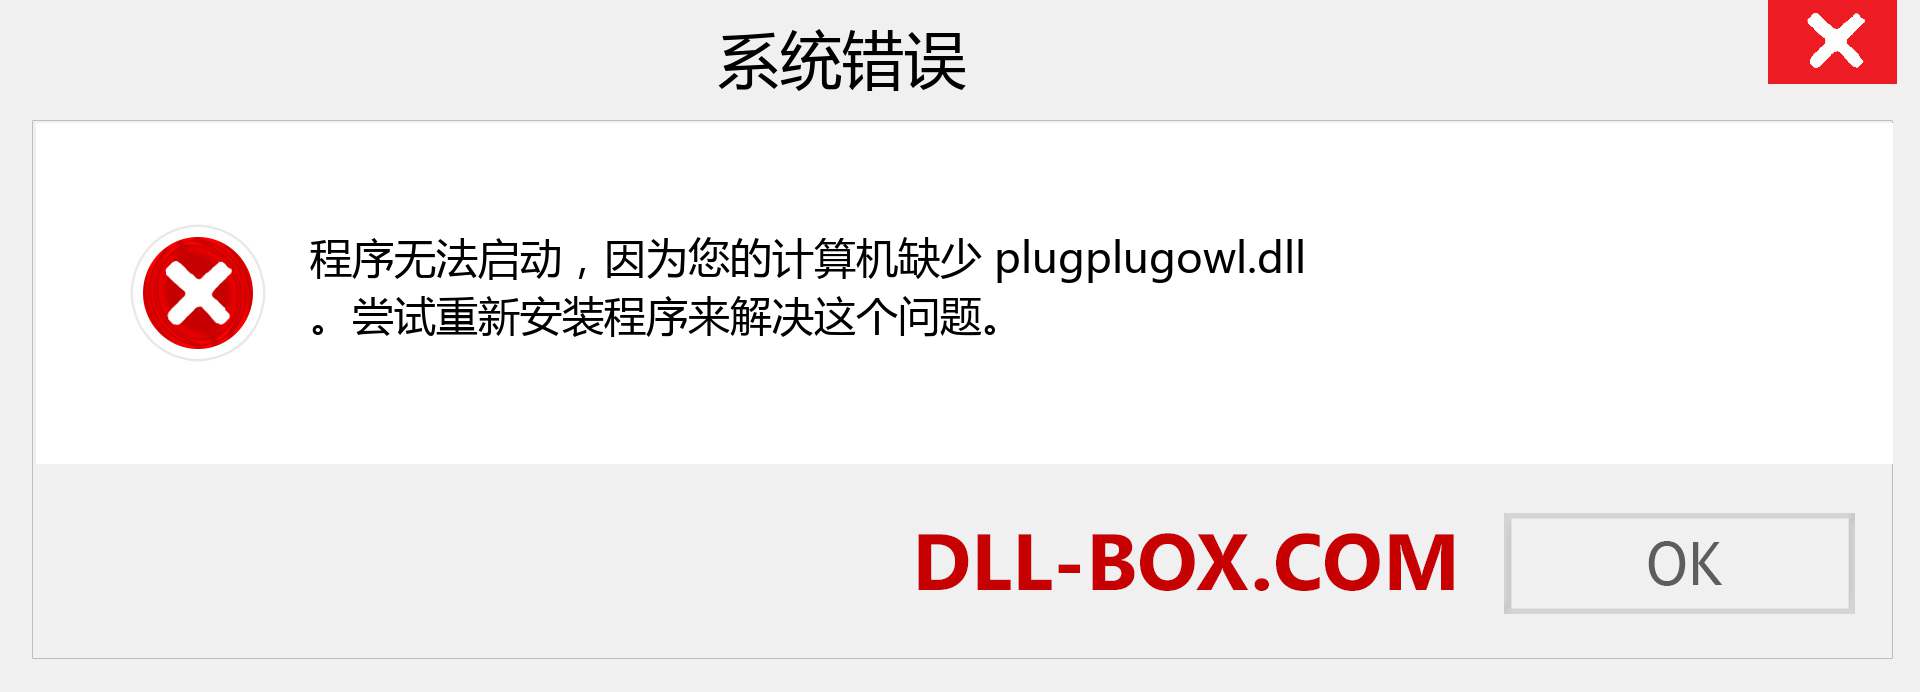 plugplugowl.dll 文件丢失？。 适用于 Windows 7、8、10 的下载 - 修复 Windows、照片、图像上的 plugplugowl dll 丢失错误